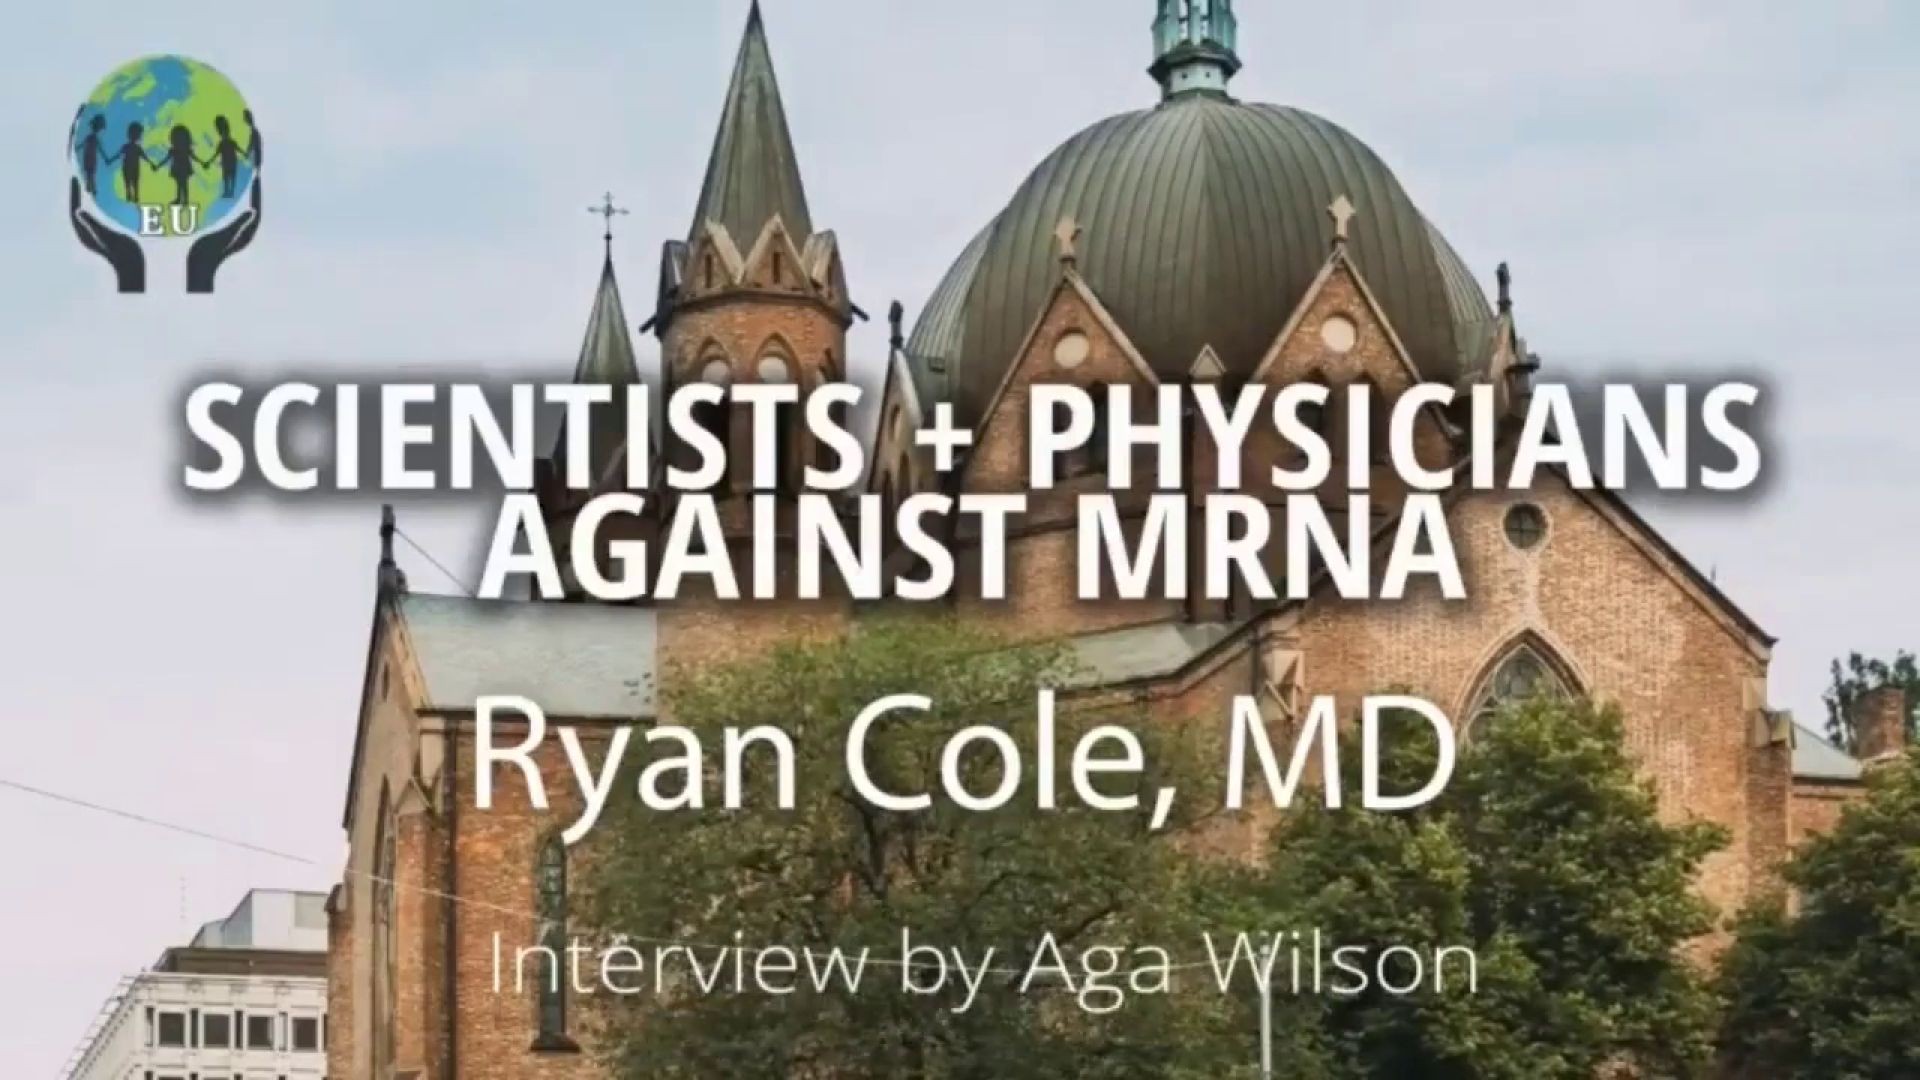 Dr. Ryan Cole und Dr. Alexandra Henrion Caude warnen eindringlich vor dem mRNA-Impfstoff für Kinder